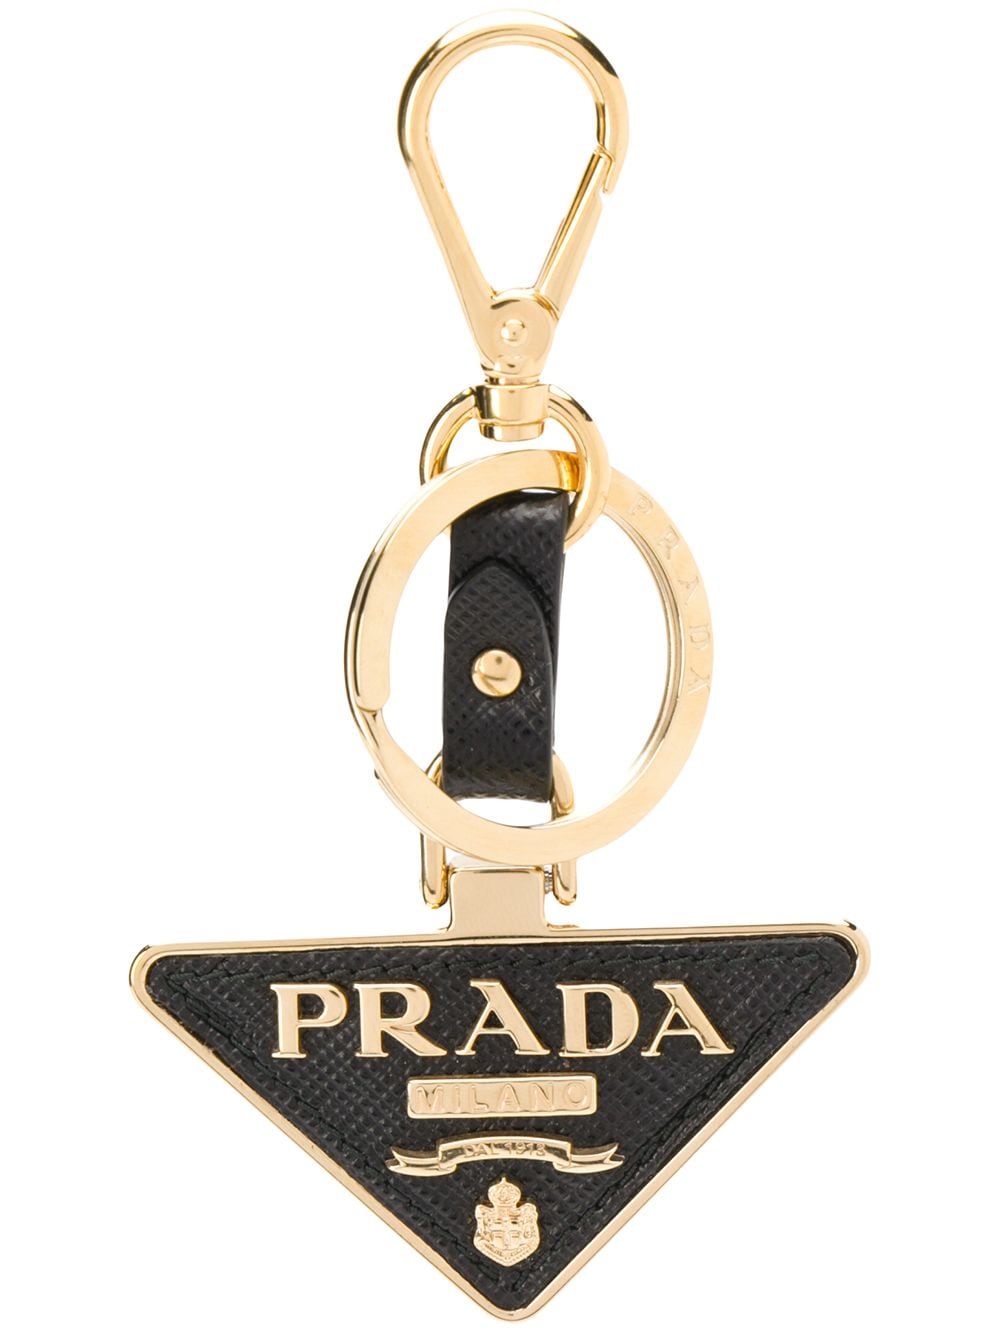 фото Prada брелок для ключей с треугольной подвеской и логотипом